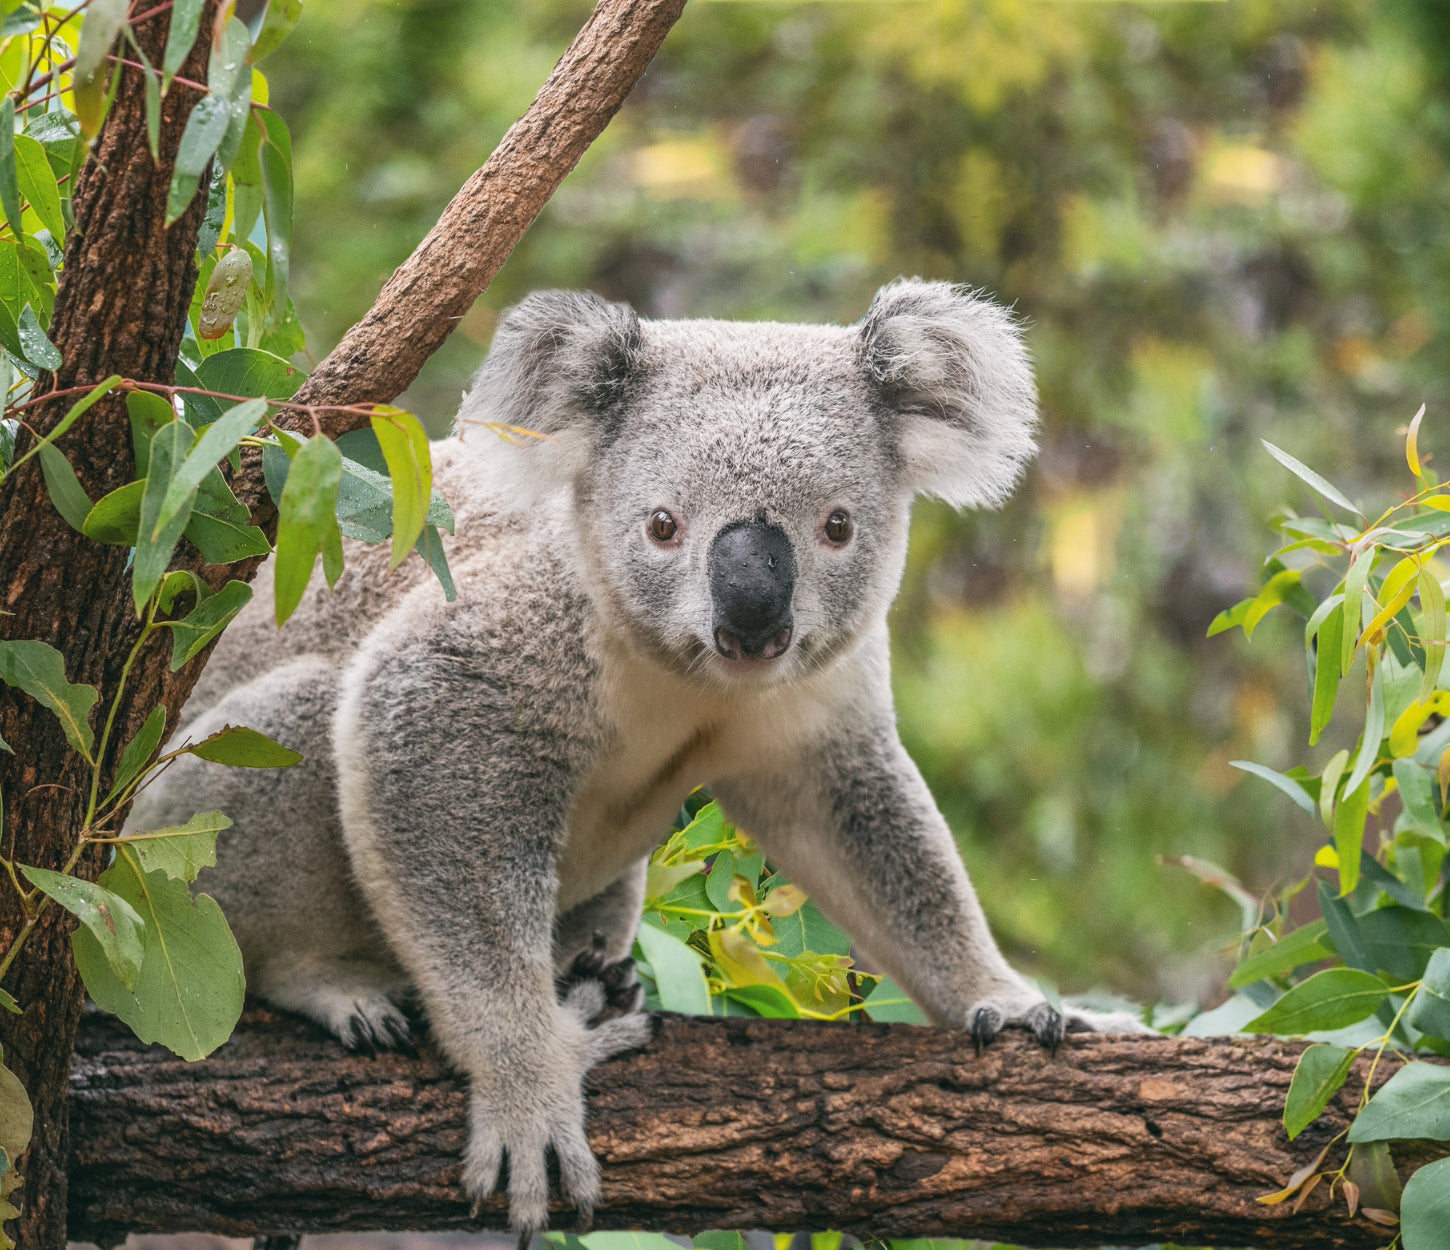 Koala in forest, supporting Australia's Wildlife